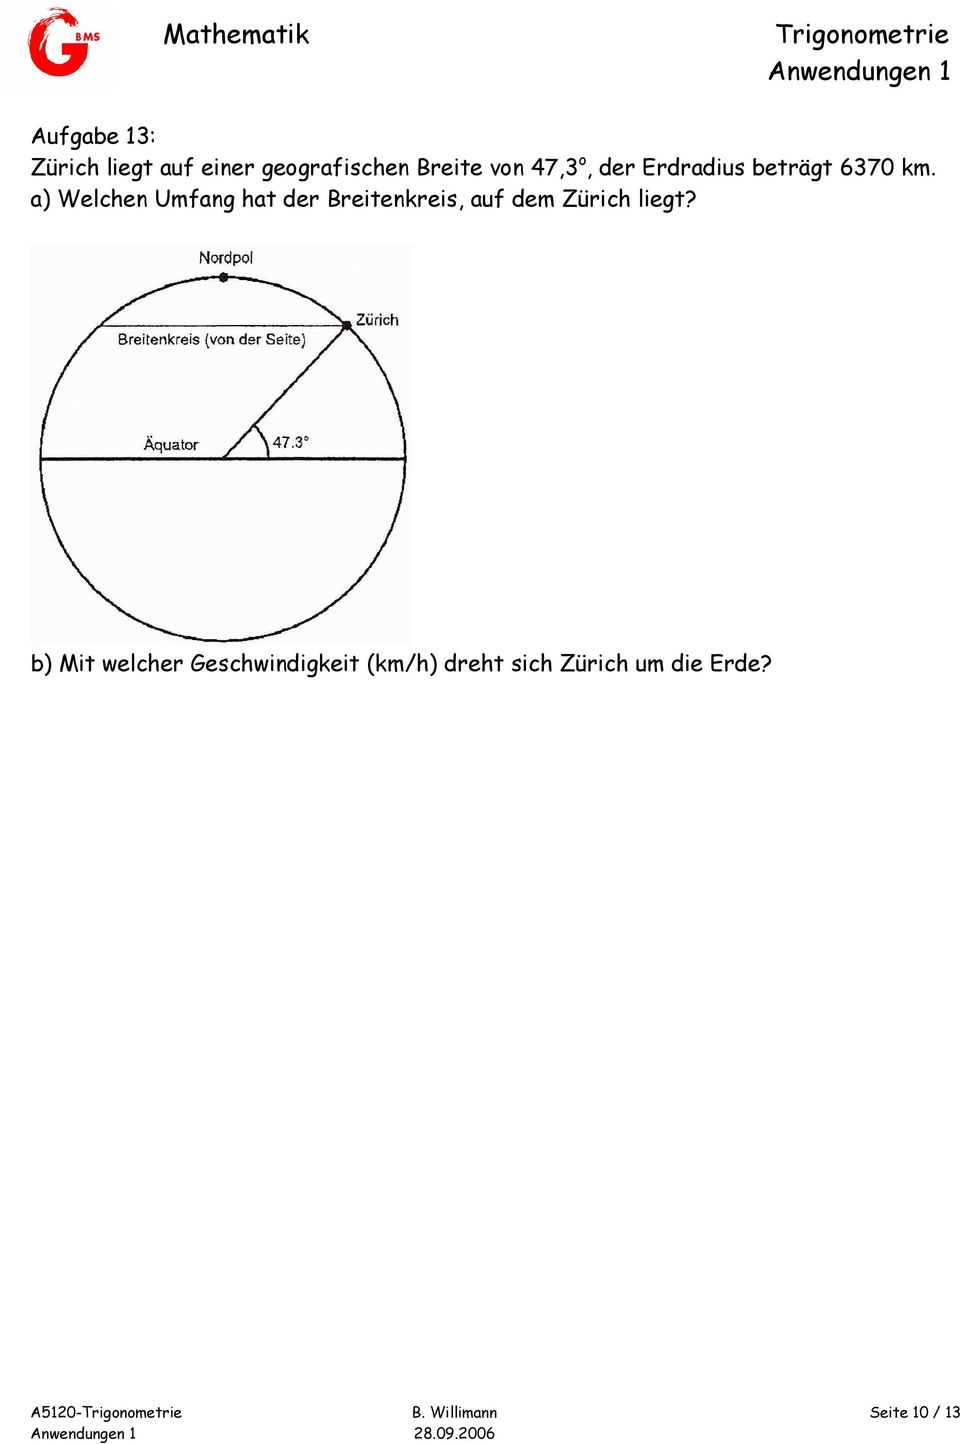 a) Welchen Umfang hat der Breitenkreis, auf dem Zürich liegt?